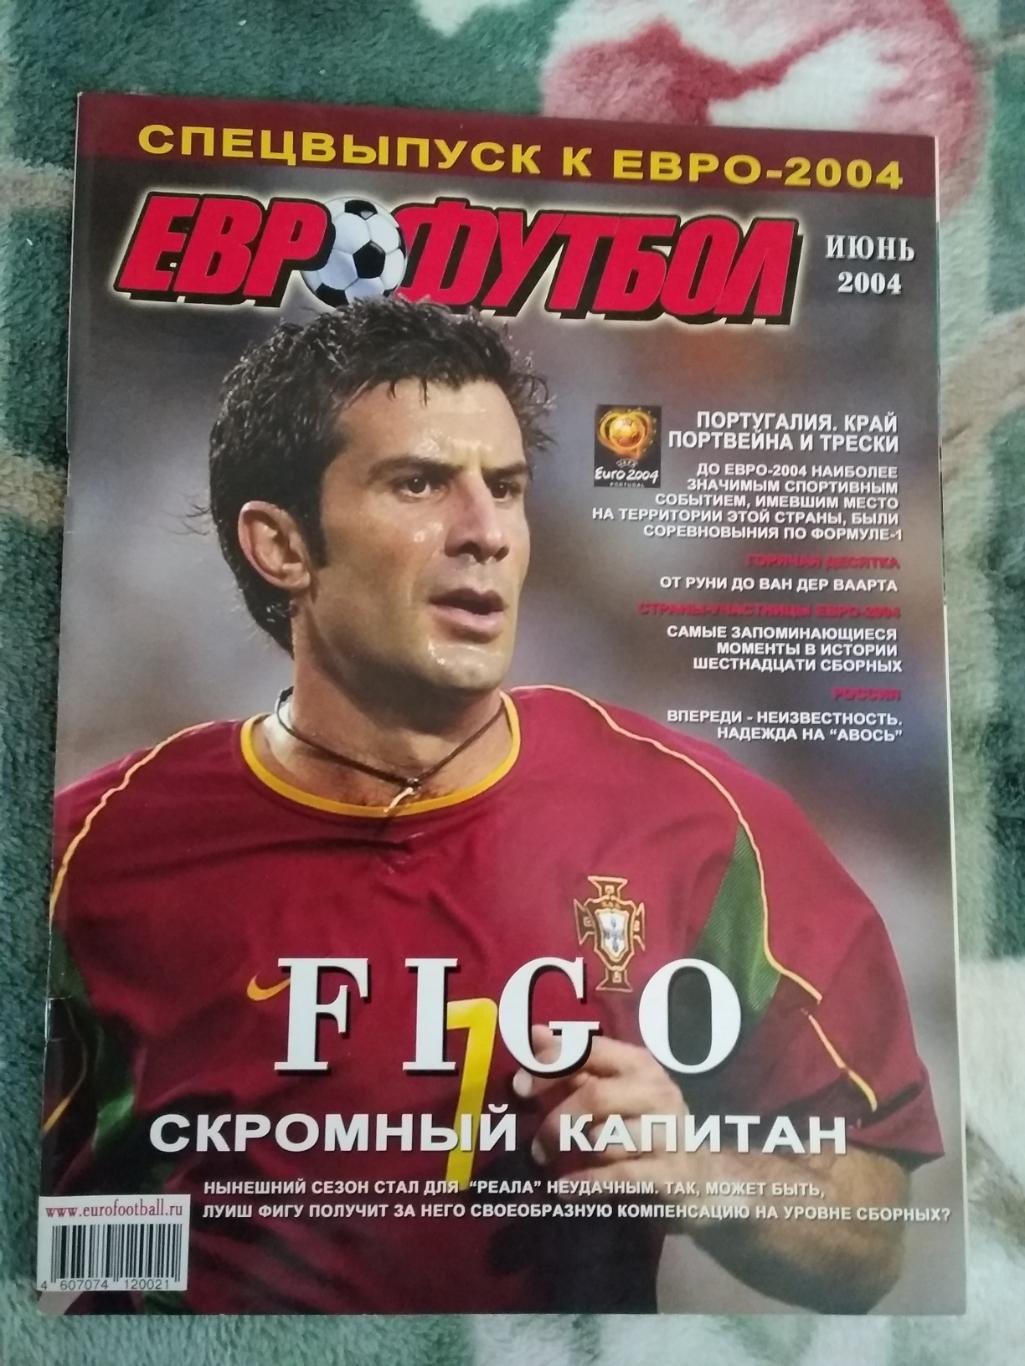 Журнал.Еврофутбол.Июнь 2004 г.Спецвыпуск к ЧЕ.